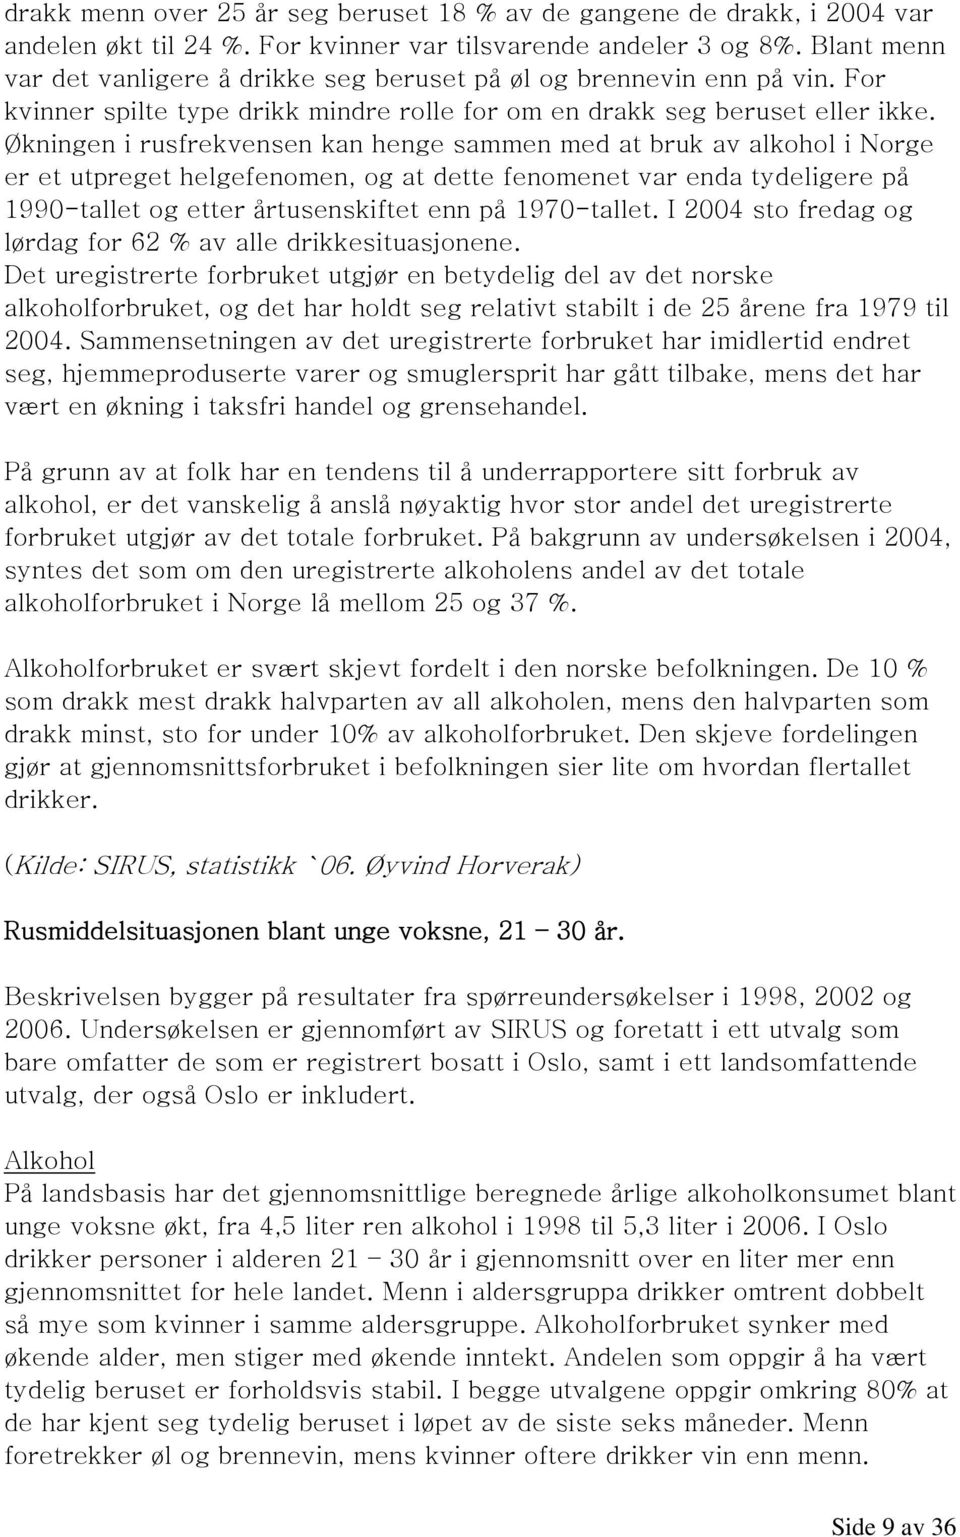 Økningen i rusfrekvensen kan henge sammen med at bruk av alkohol i Norge er et utpreget helgefenomen, og at dette fenomenet var enda tydeligere på 1990-tallet og etter årtusenskiftet enn på